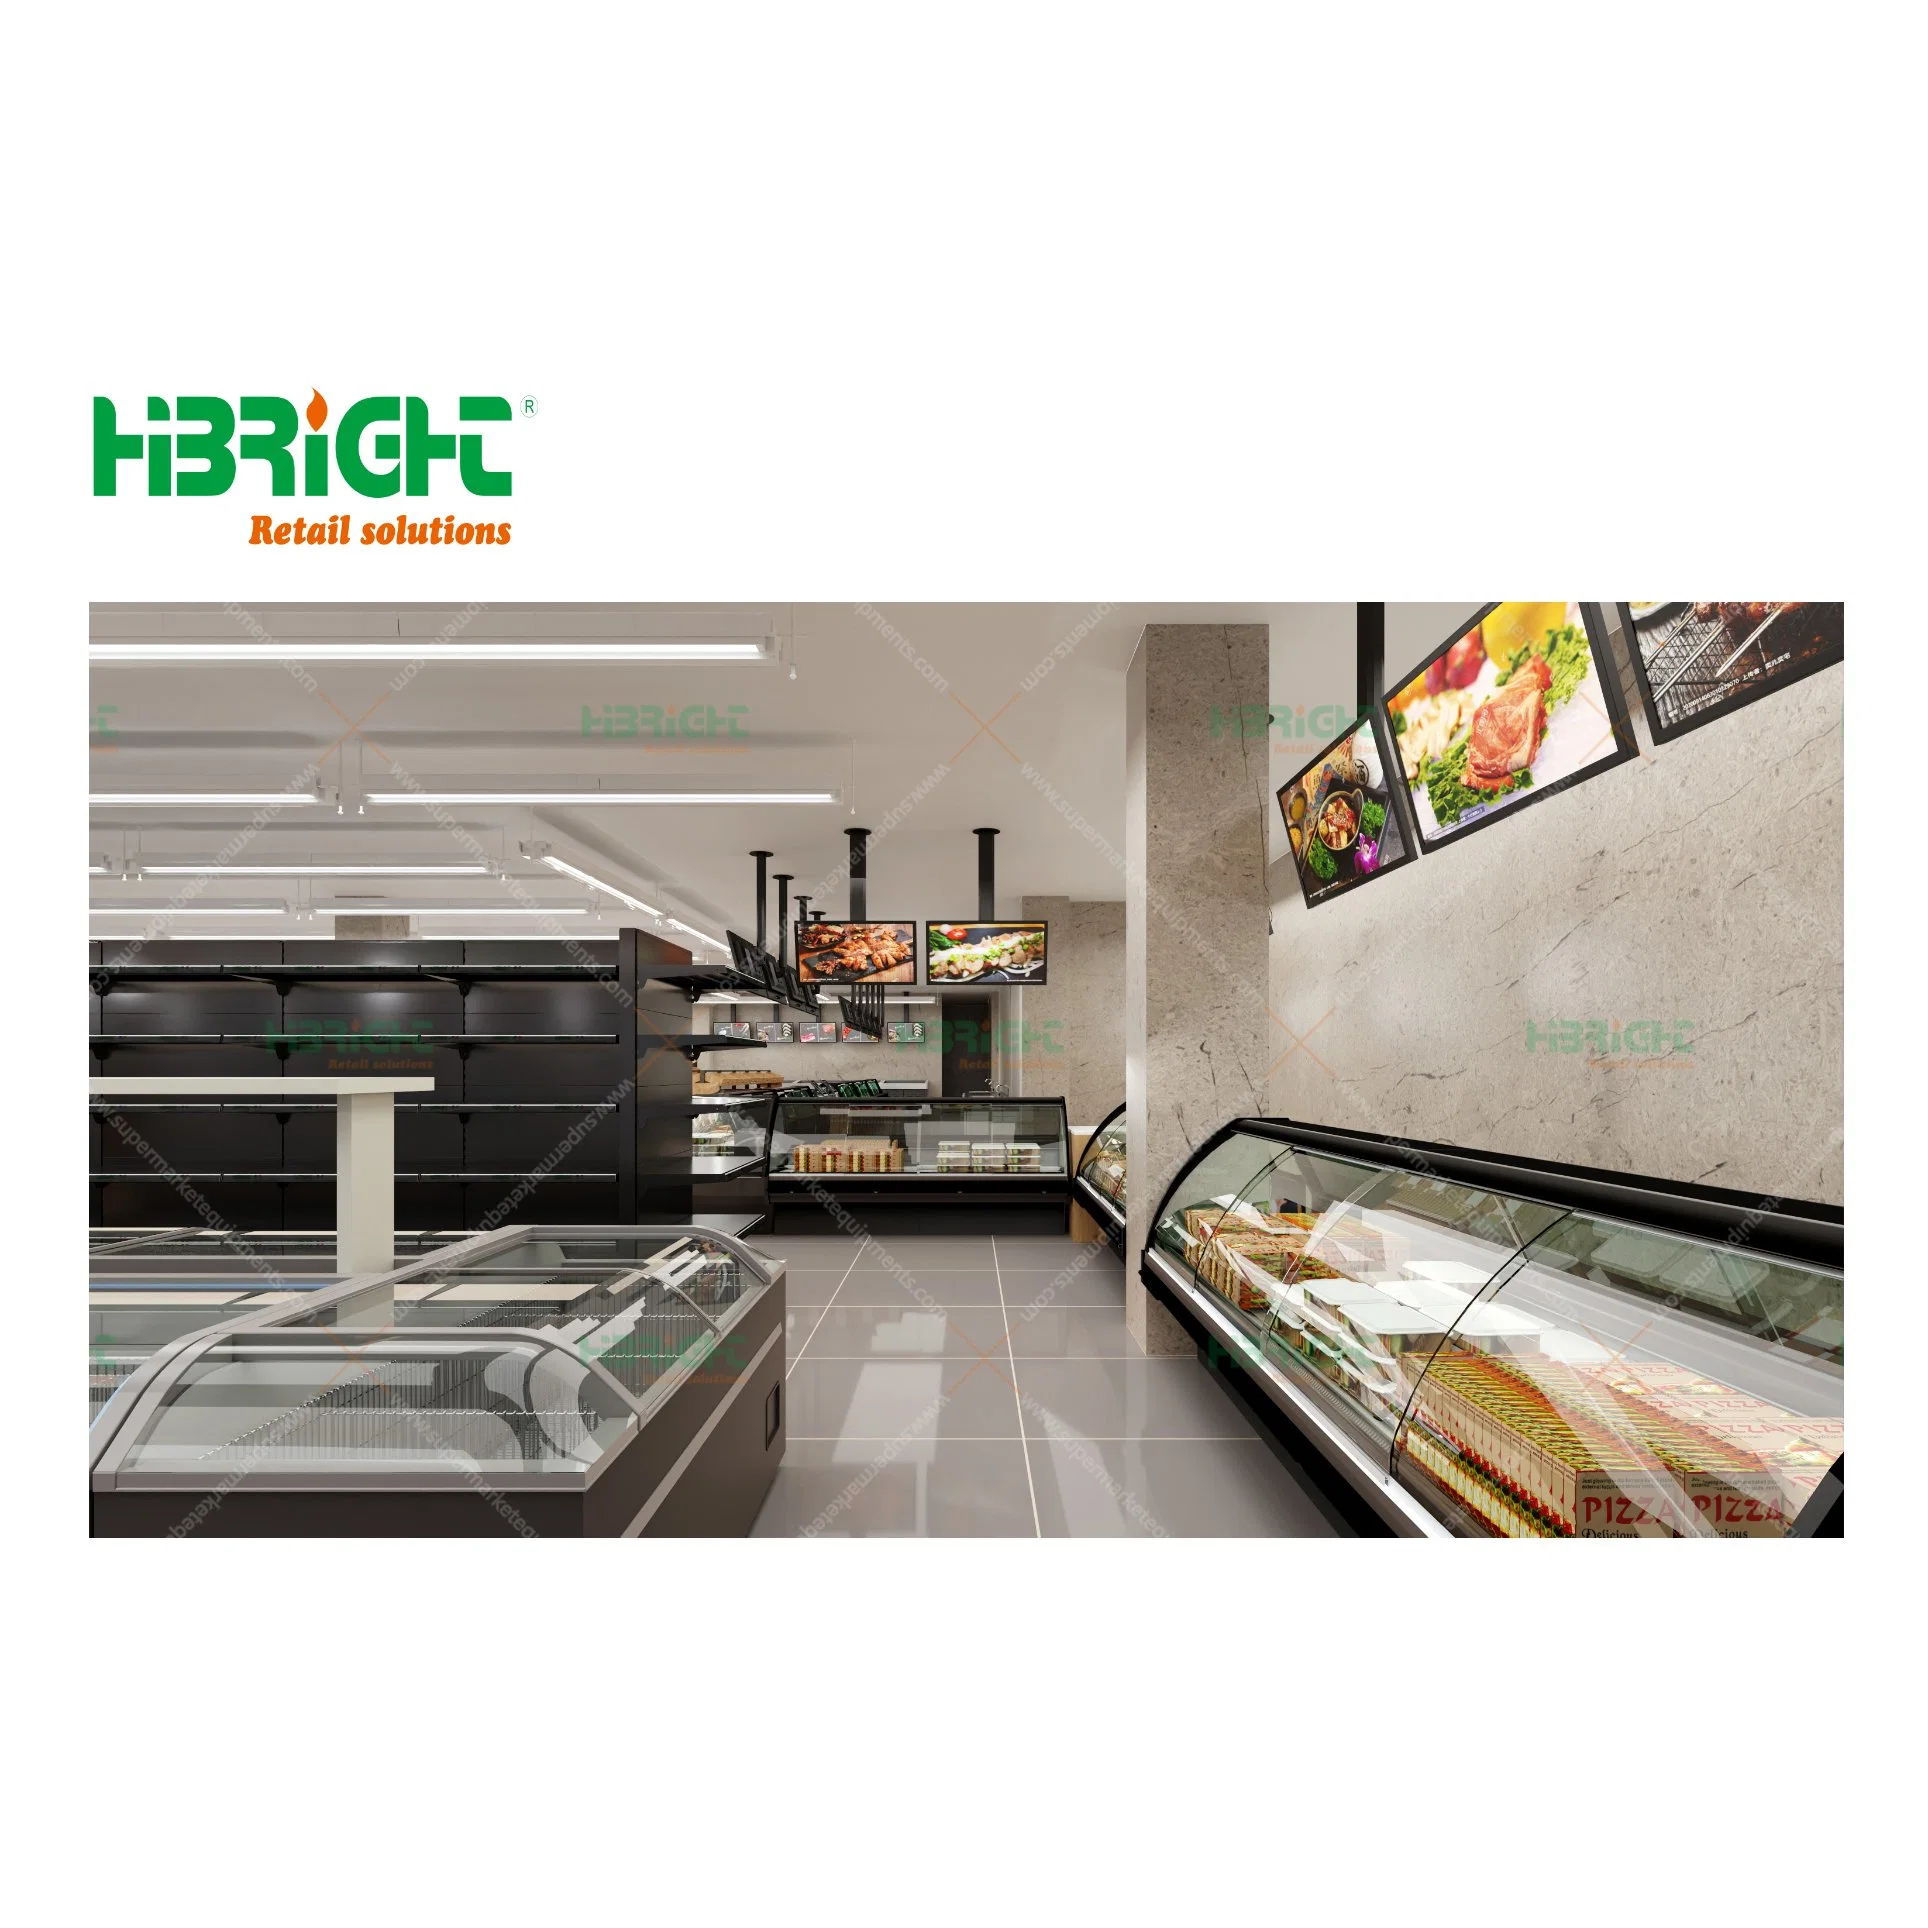 Racks de chiller com ecrã Highbright formato de logótipo personalizado Layout Design supermercado Equipamento